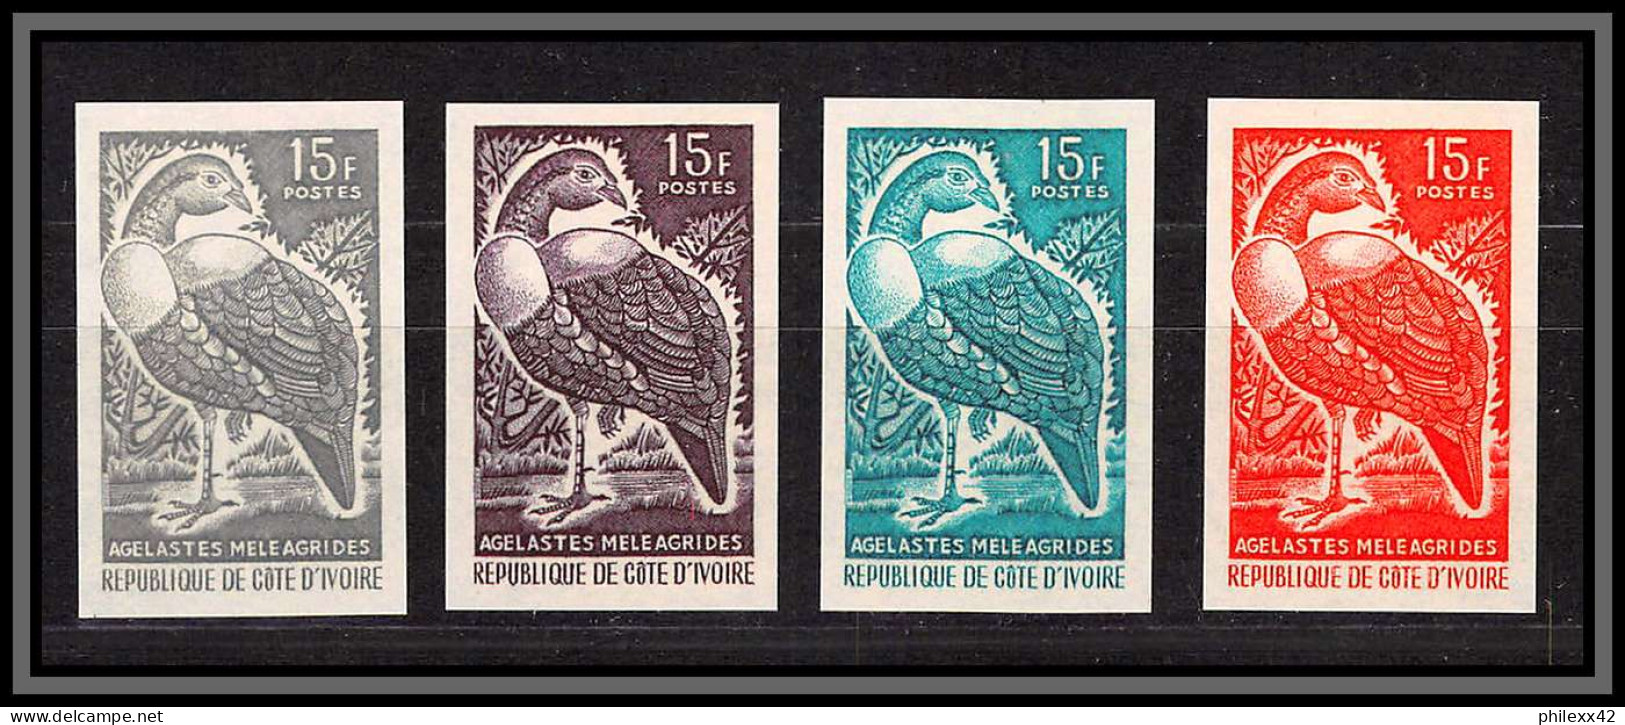 93642d/ Cote D'ivoire N°239 Pintade Fowl Oiseaux Birds 1965 Lot 4 Couleurs Essai Proof Non Dentelé Imperf Agelastes - Gallinacées & Faisans